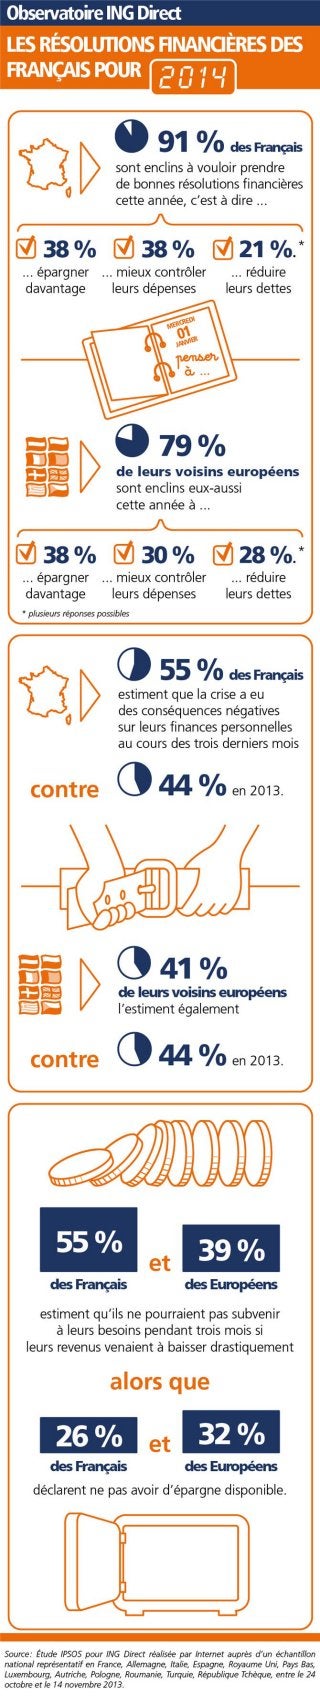 Résolutions financières des Français - Infographie